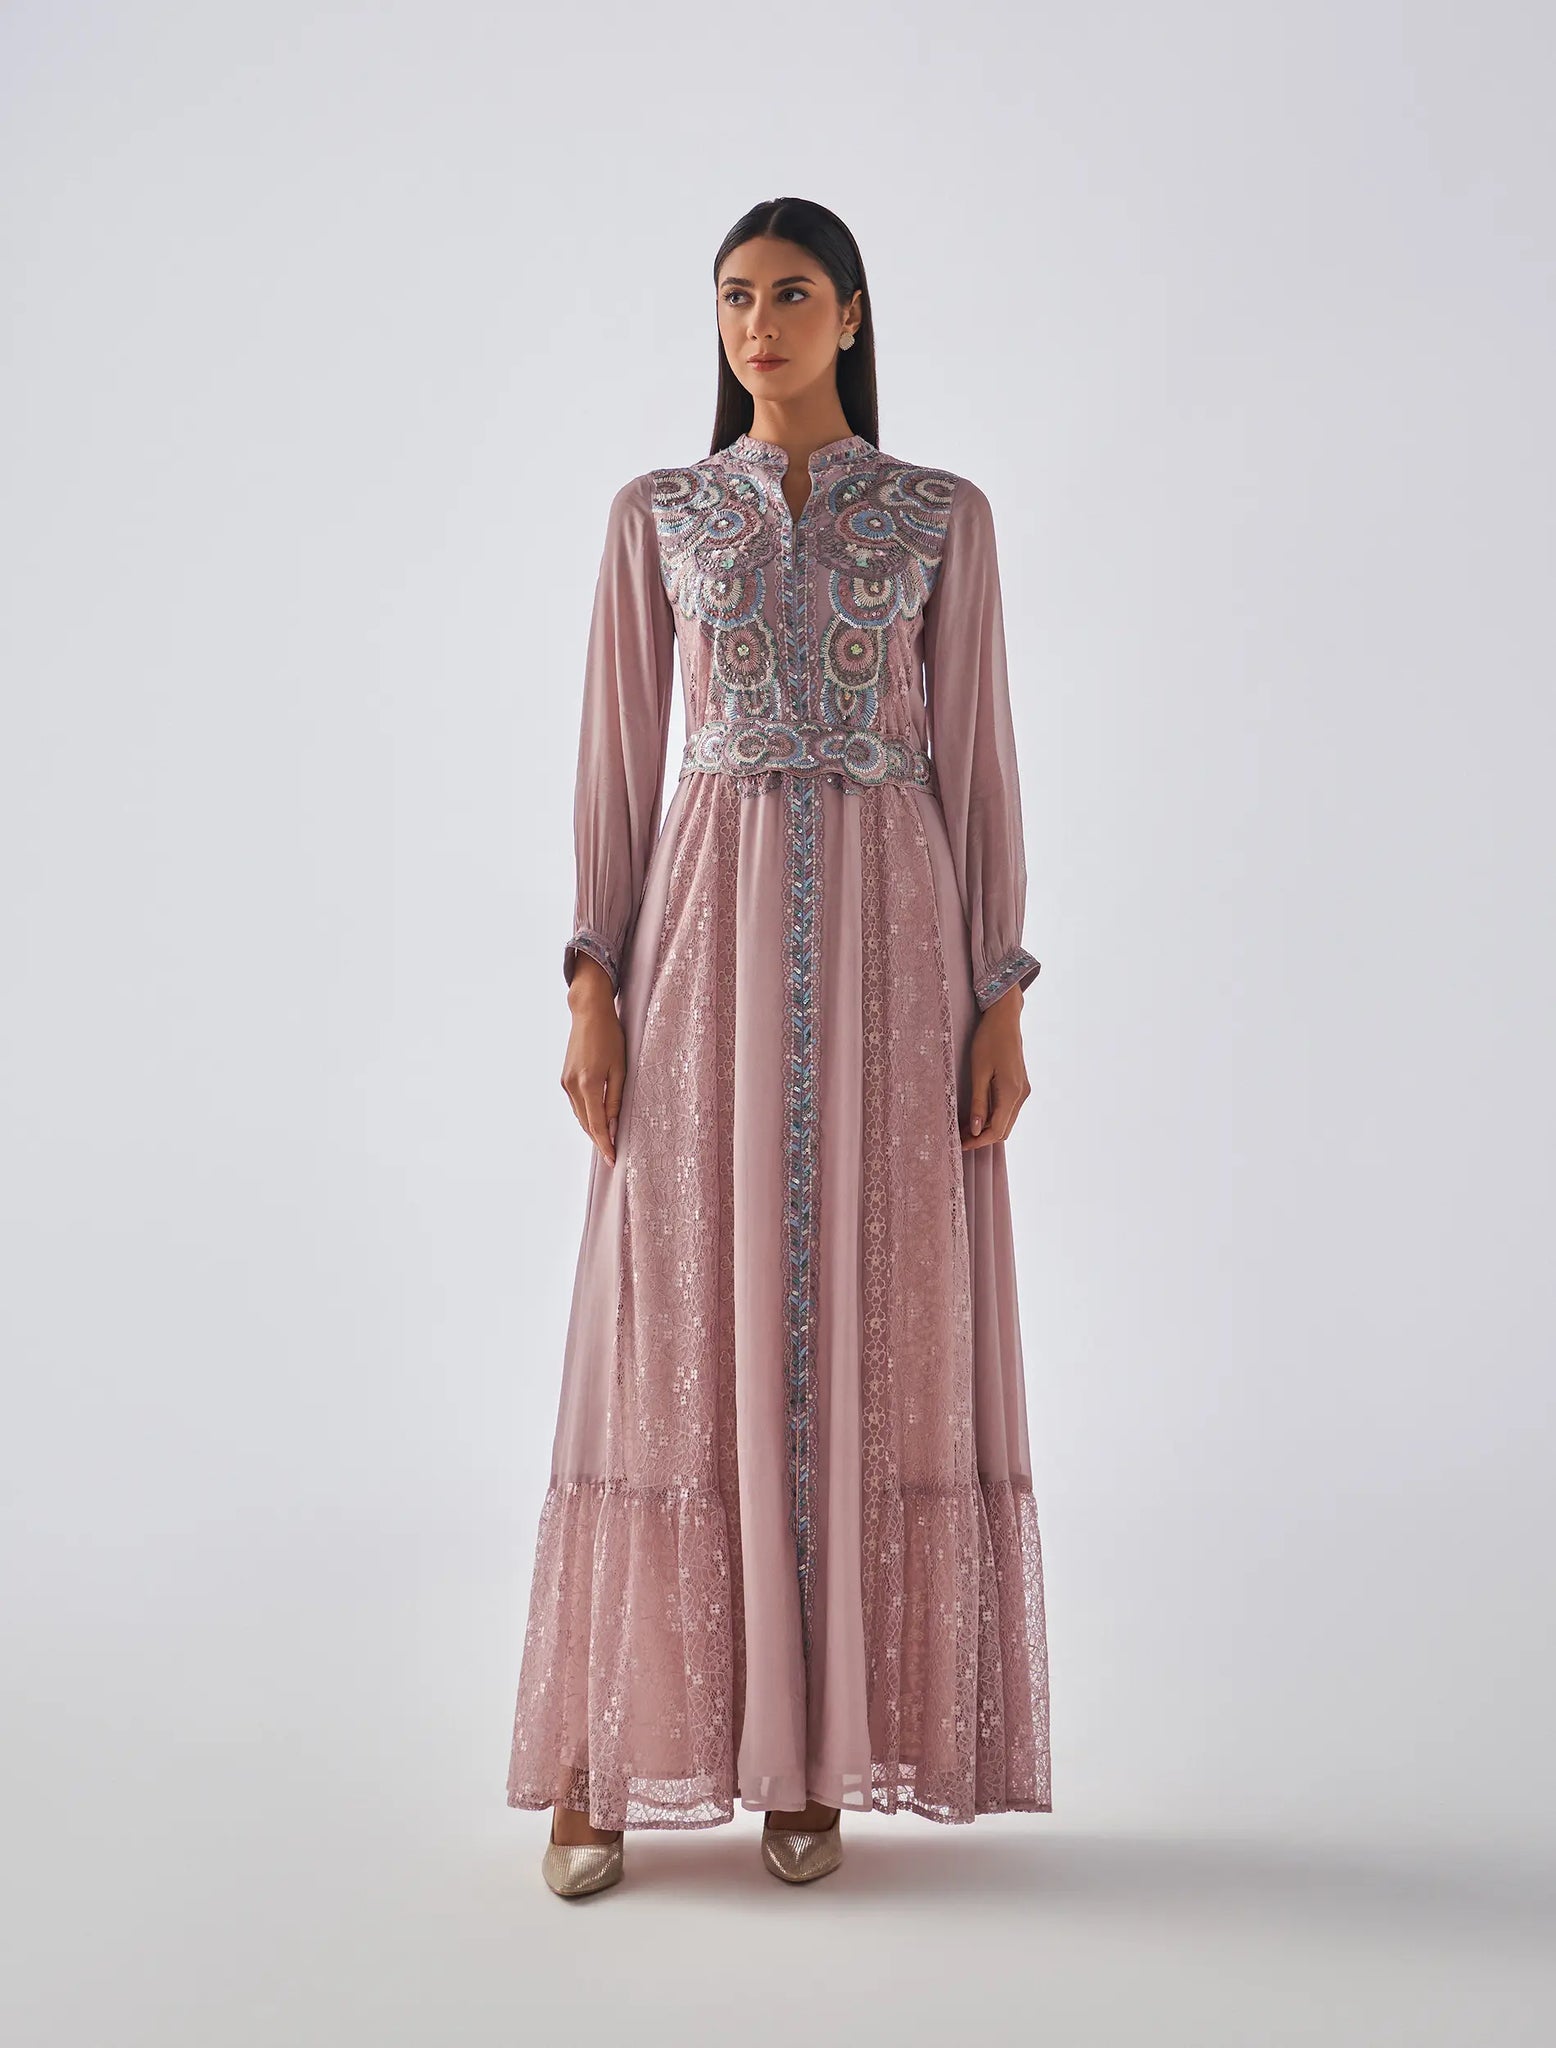 Nahariya dress